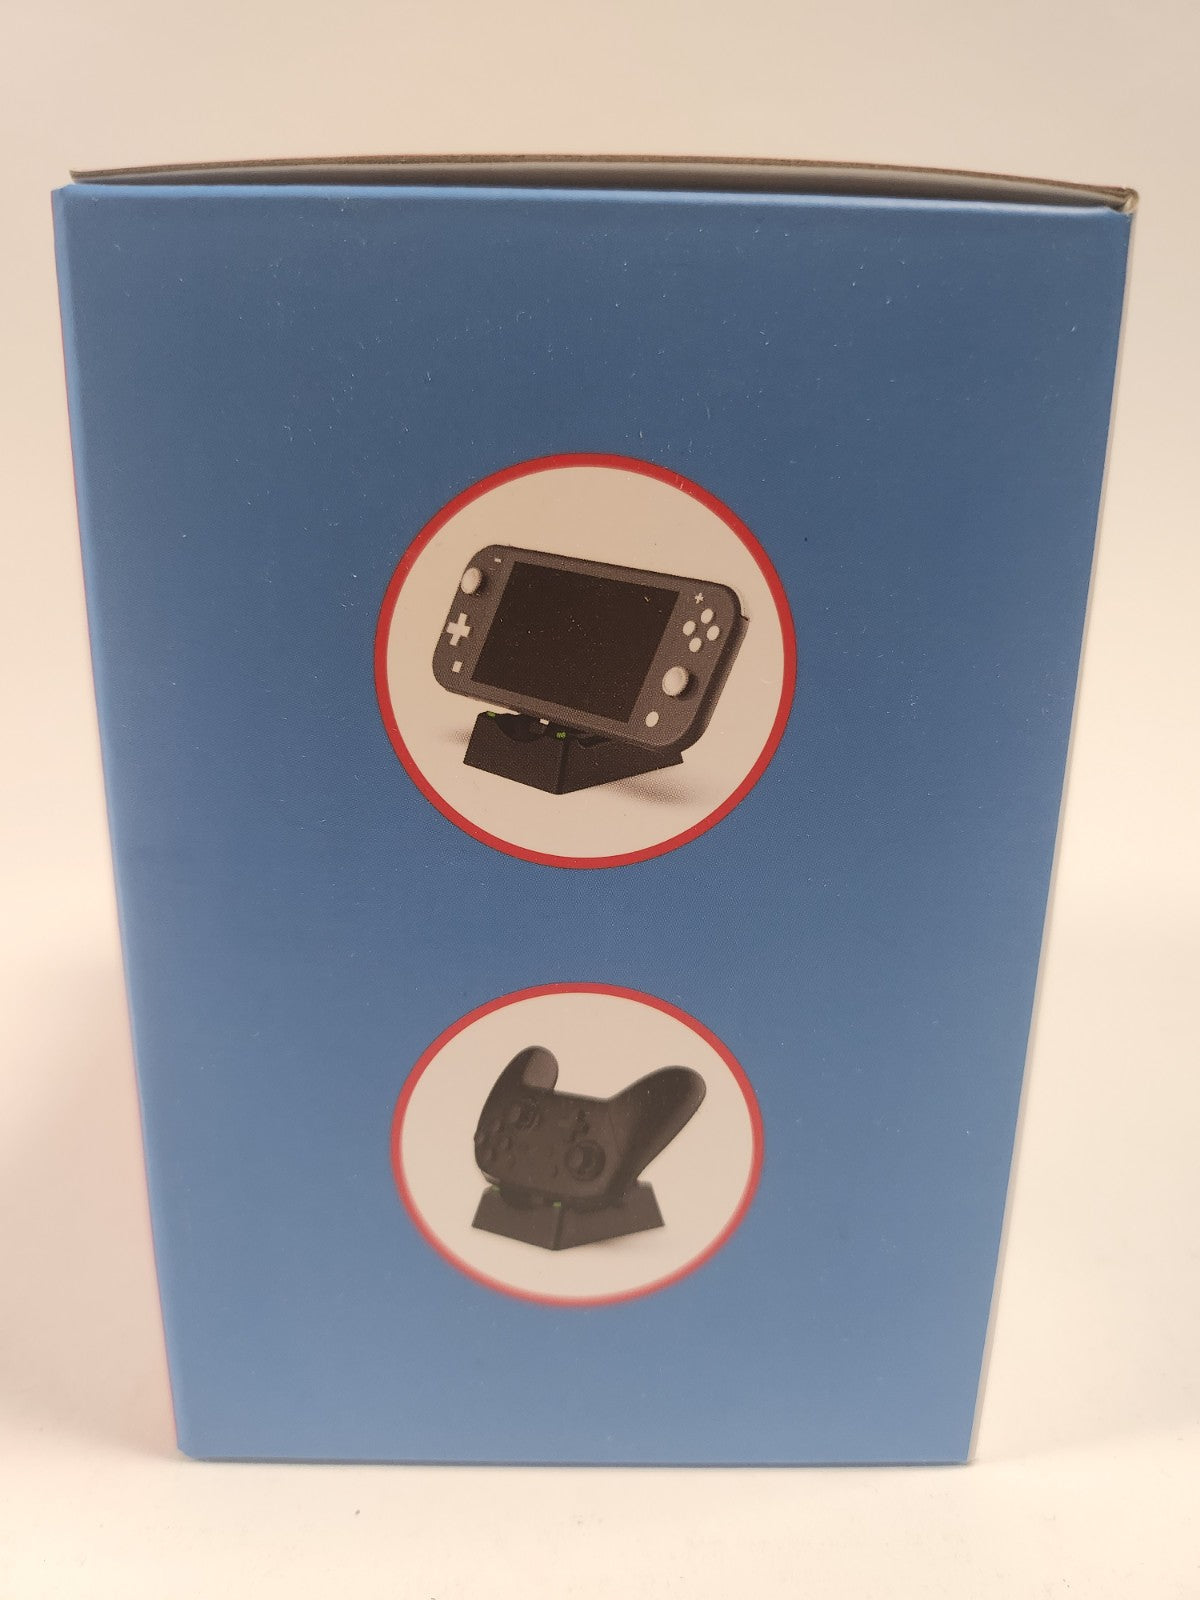 NIEUW 3 in 1 Charging Dock Boxed Nintendo Switch